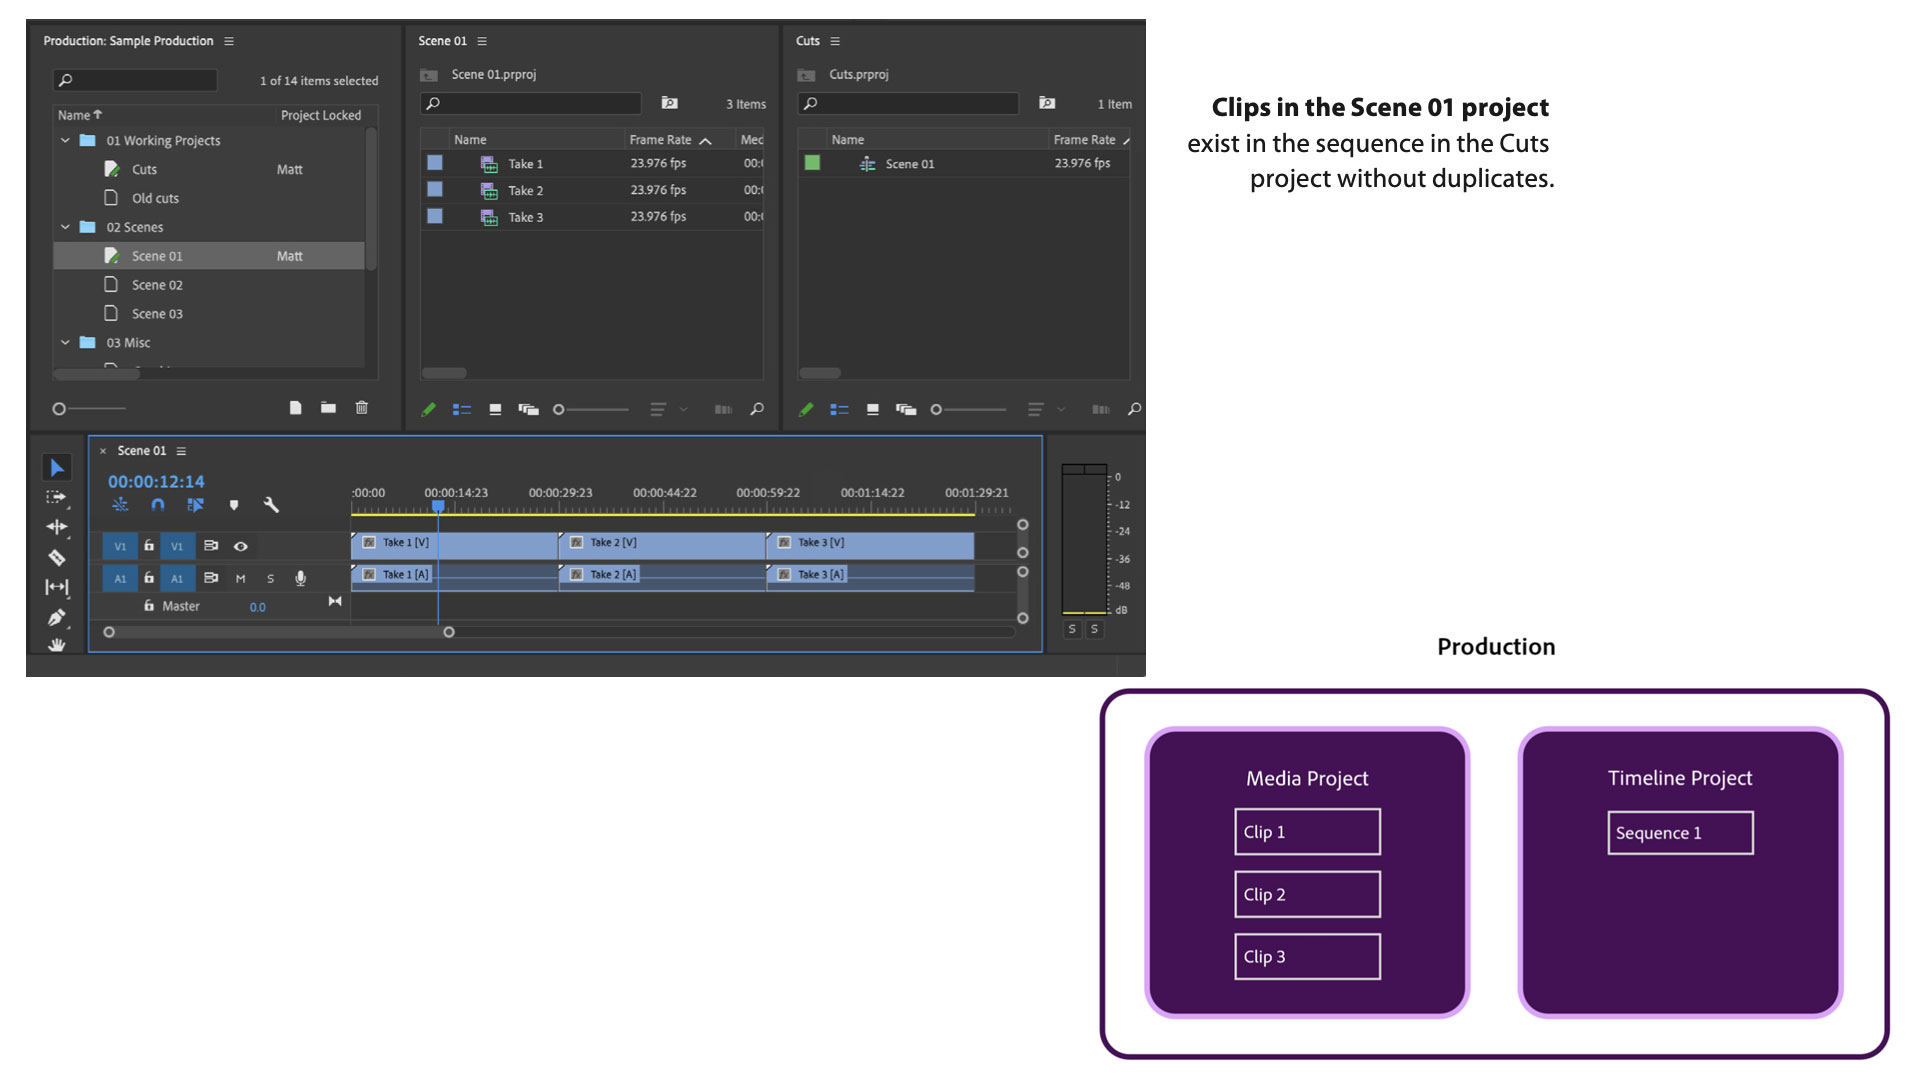 Adobe Premier 6.0ユーザガイドクイックリファレンスガイド